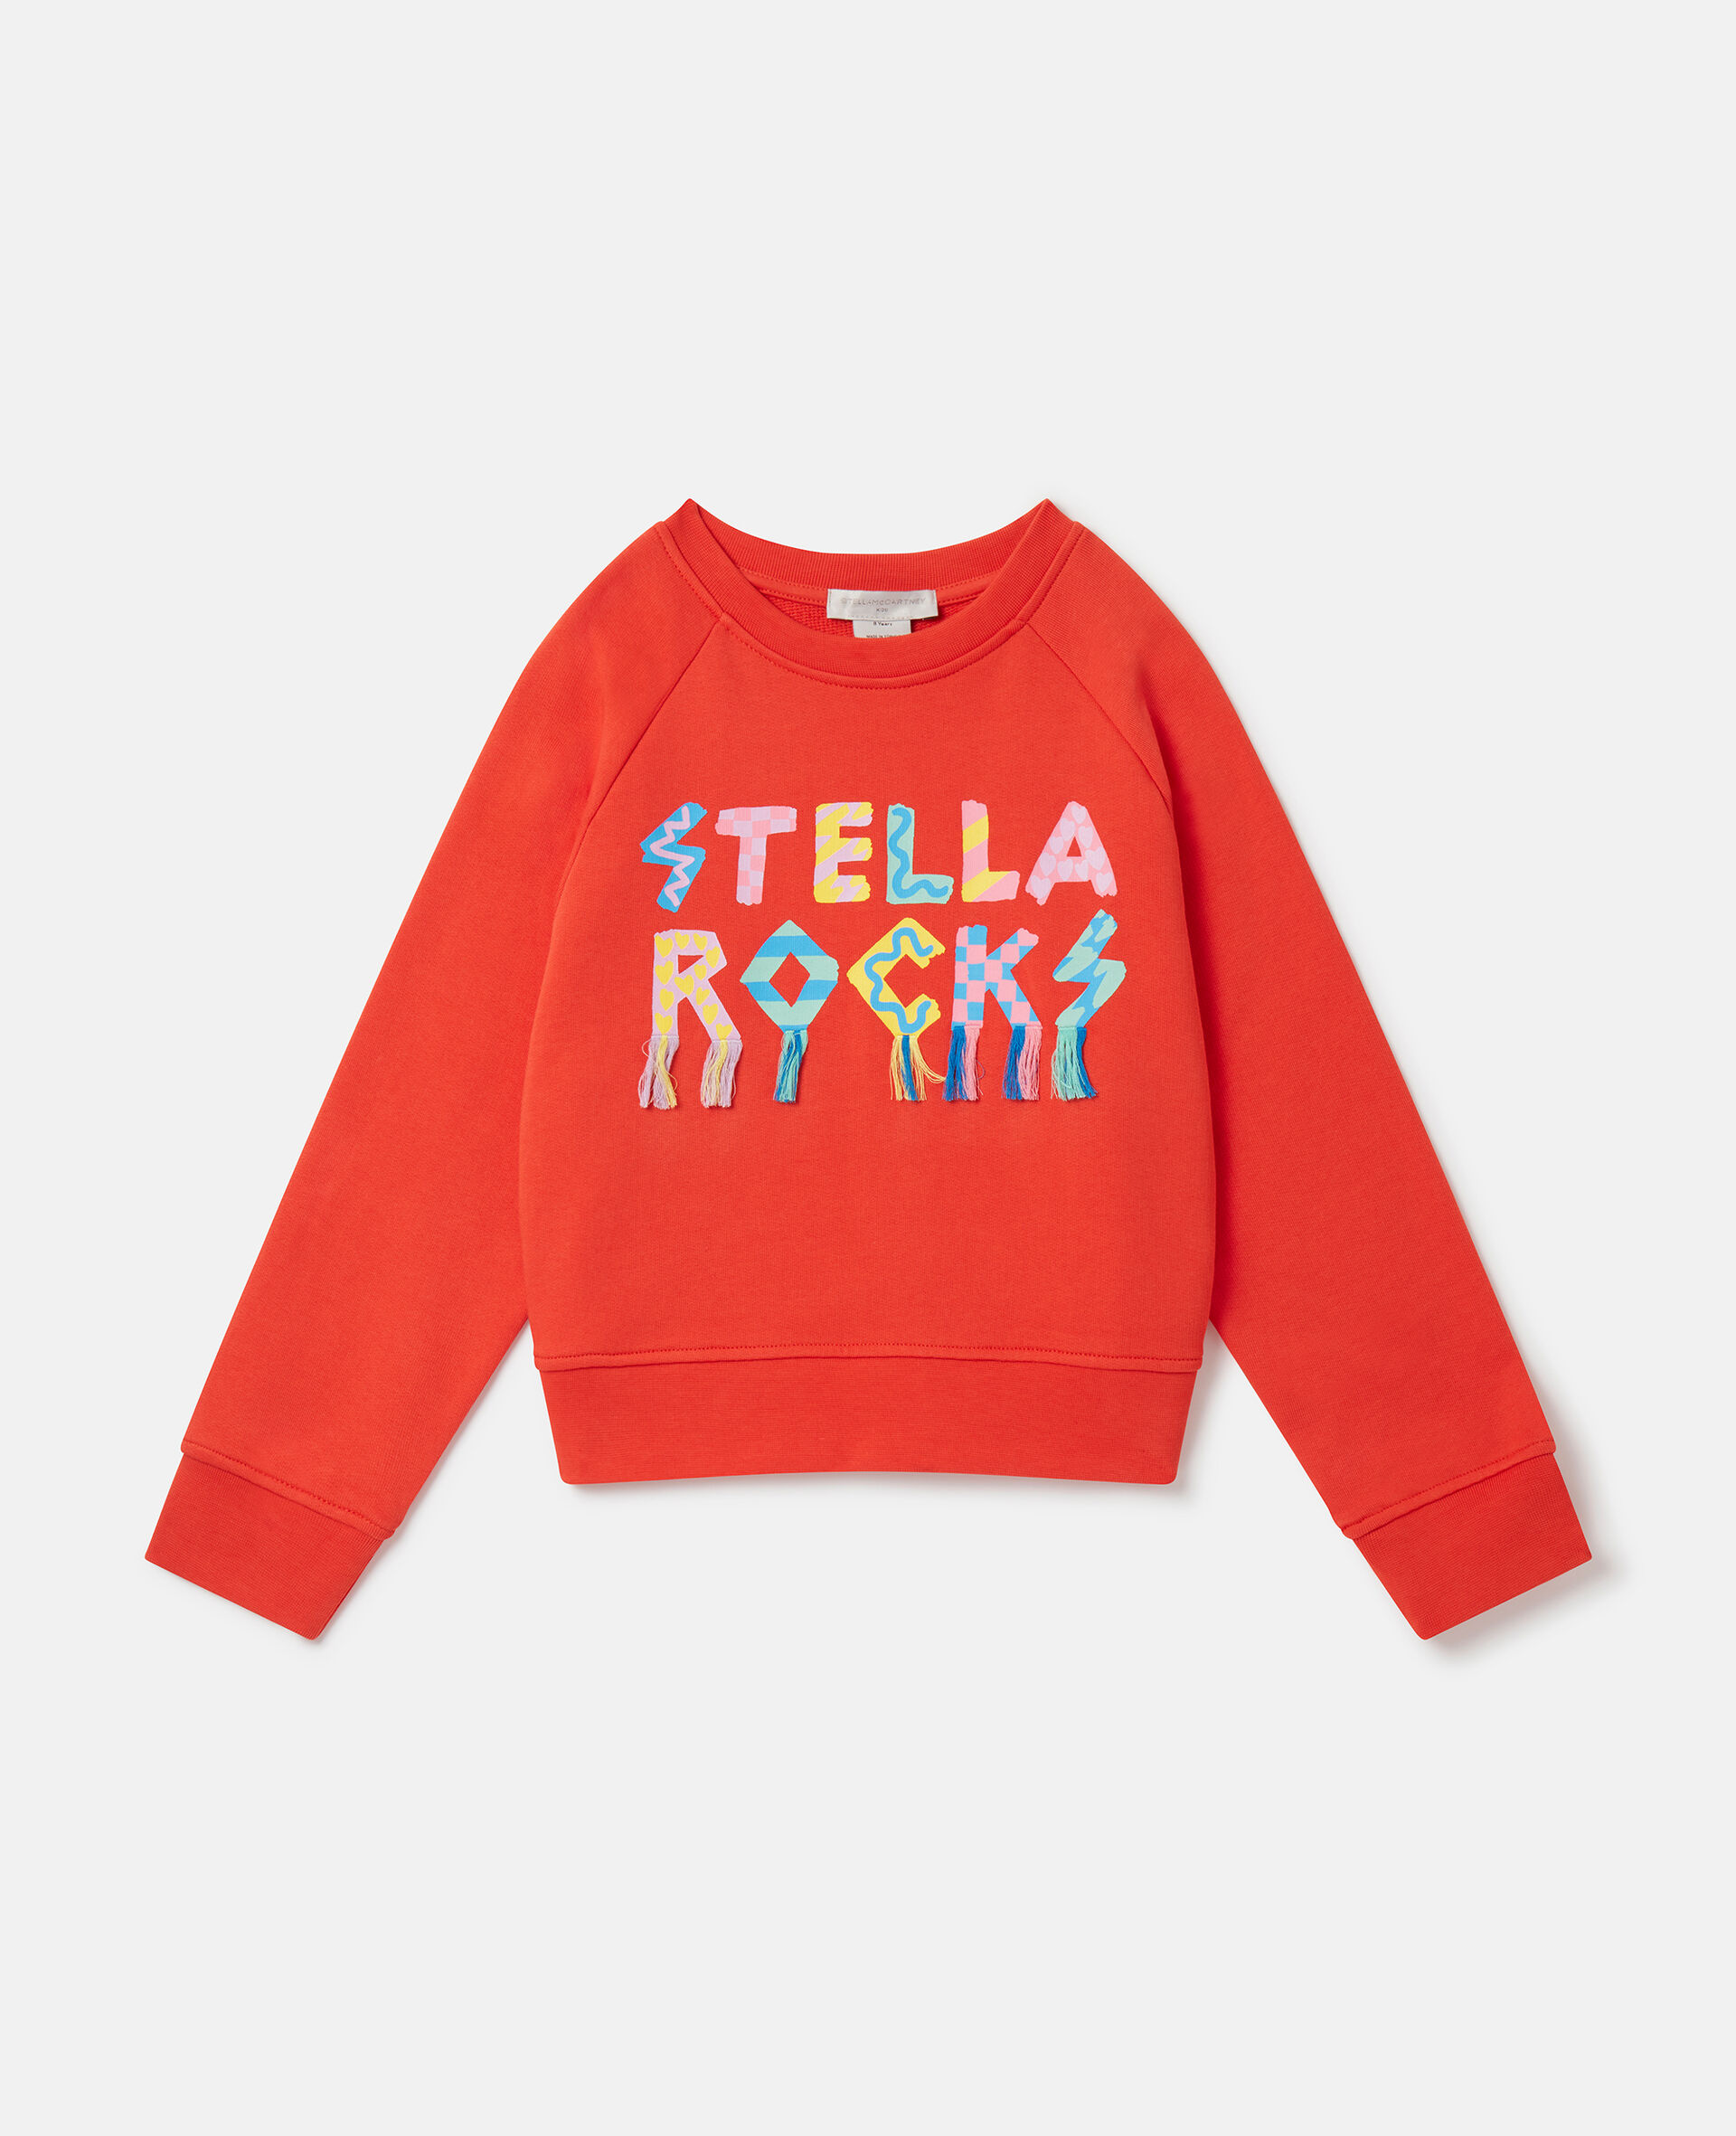 Stella摇滚卫衣-红色-medium